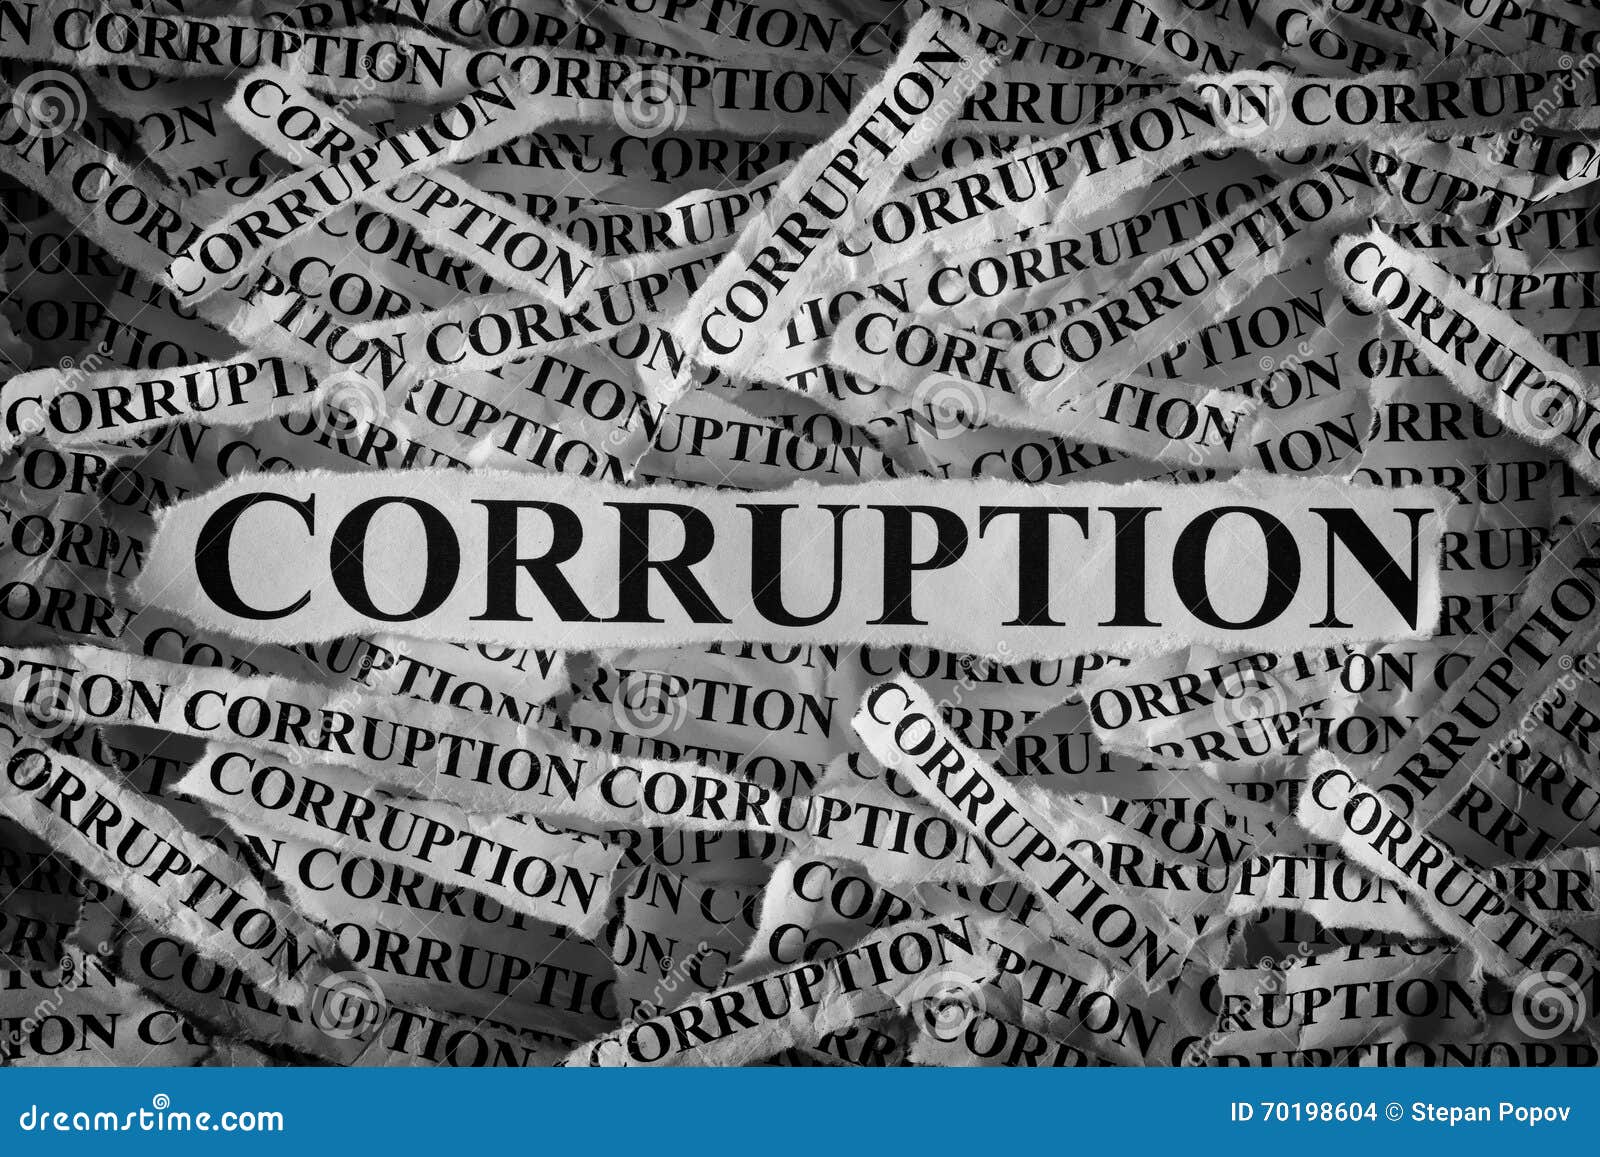 Corruption corrupt. Corruption. Corruption is. Pakistan corruption. Report corruption.